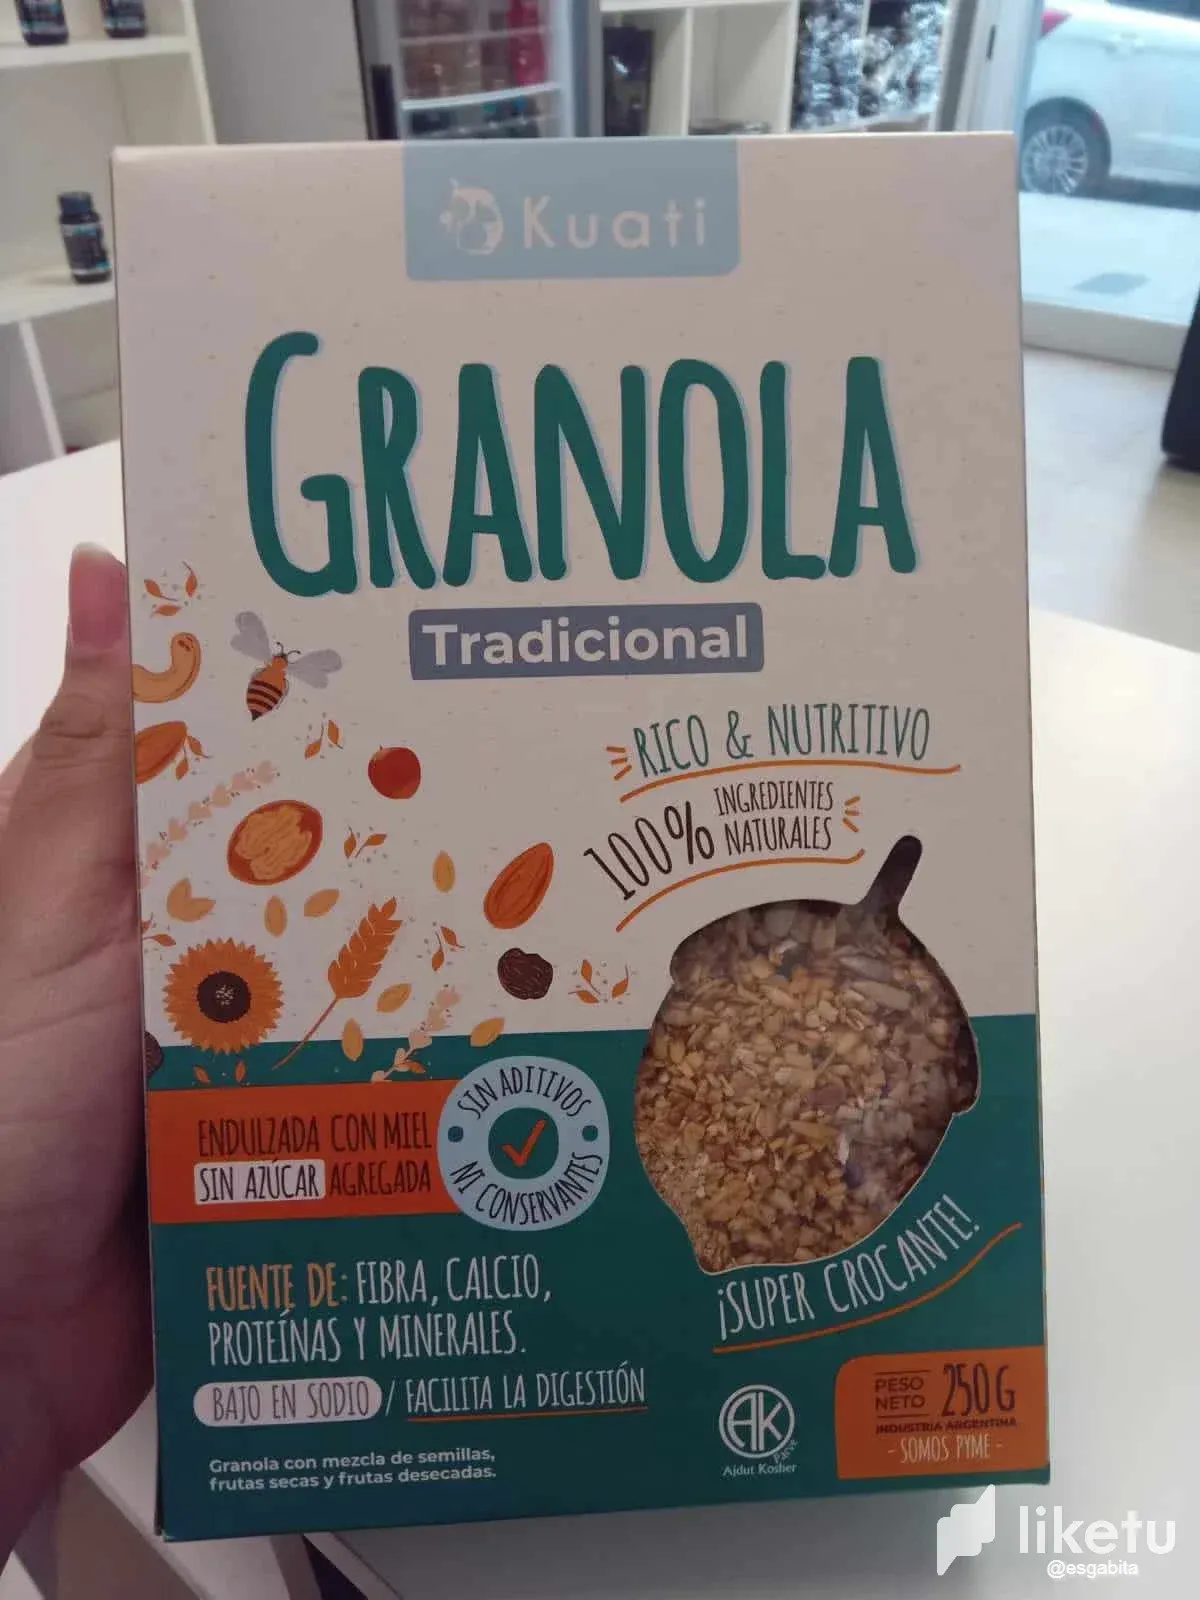 My breakfast today: Granola and Yogurt🥣🥄🌾